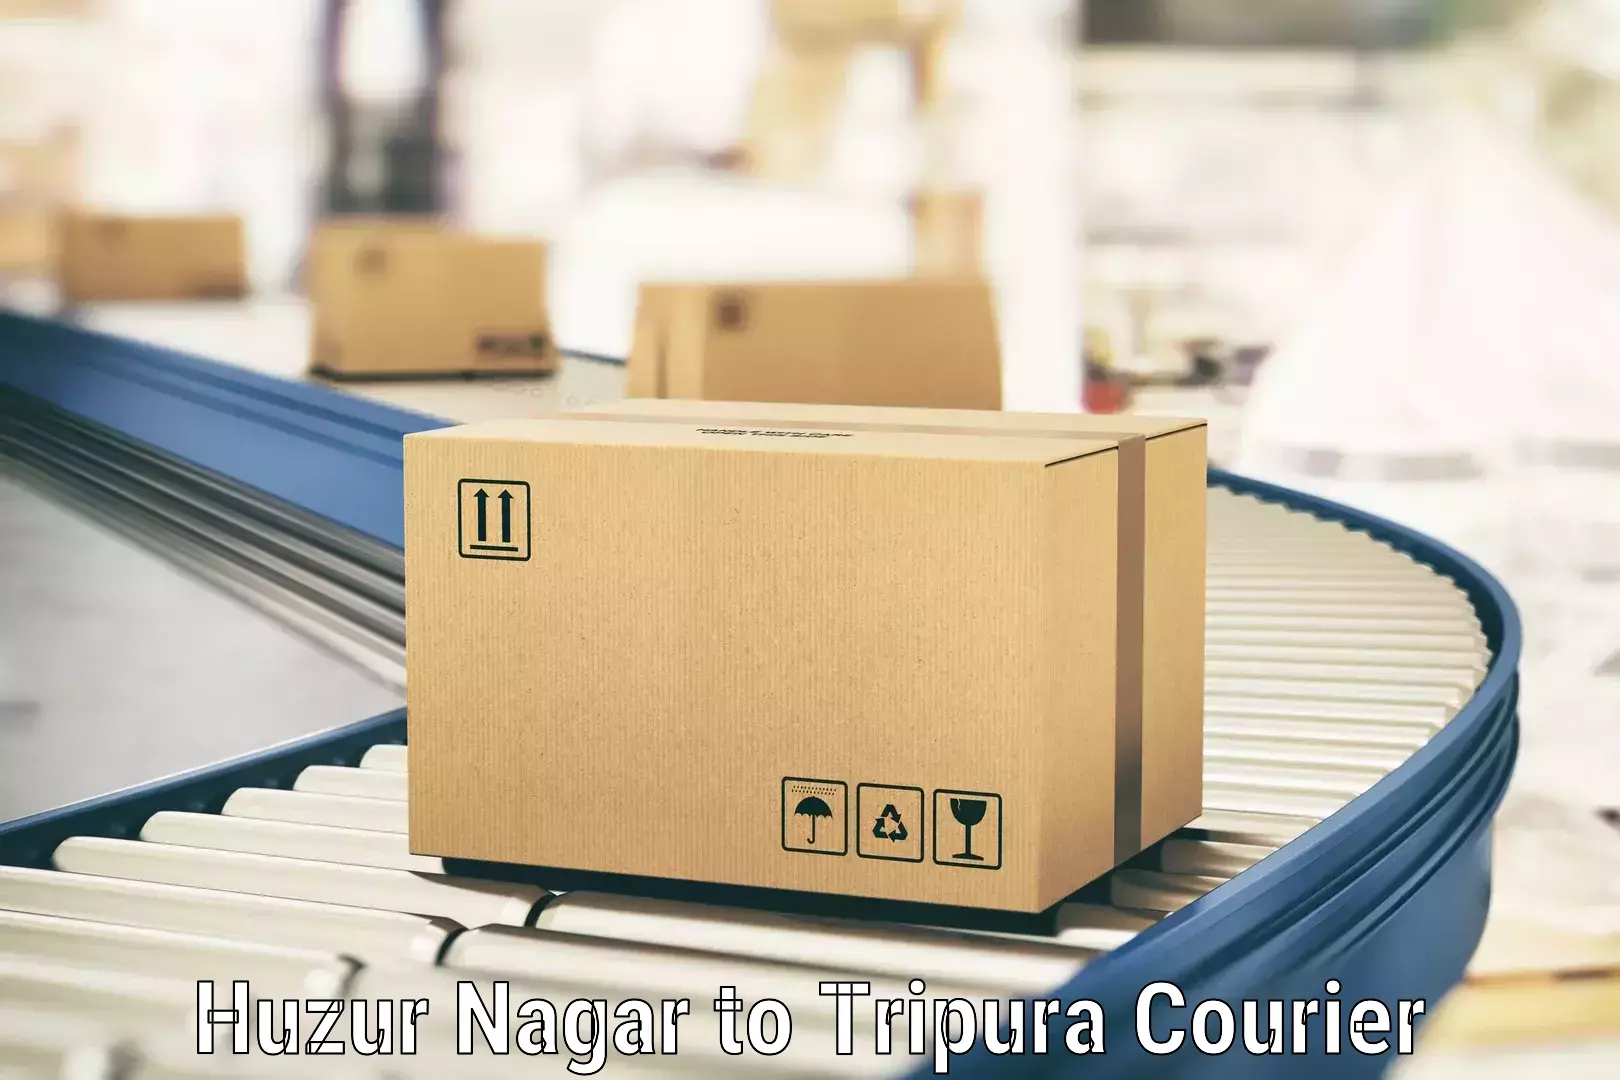 Urgent courier needs in Huzur Nagar to North Tripura